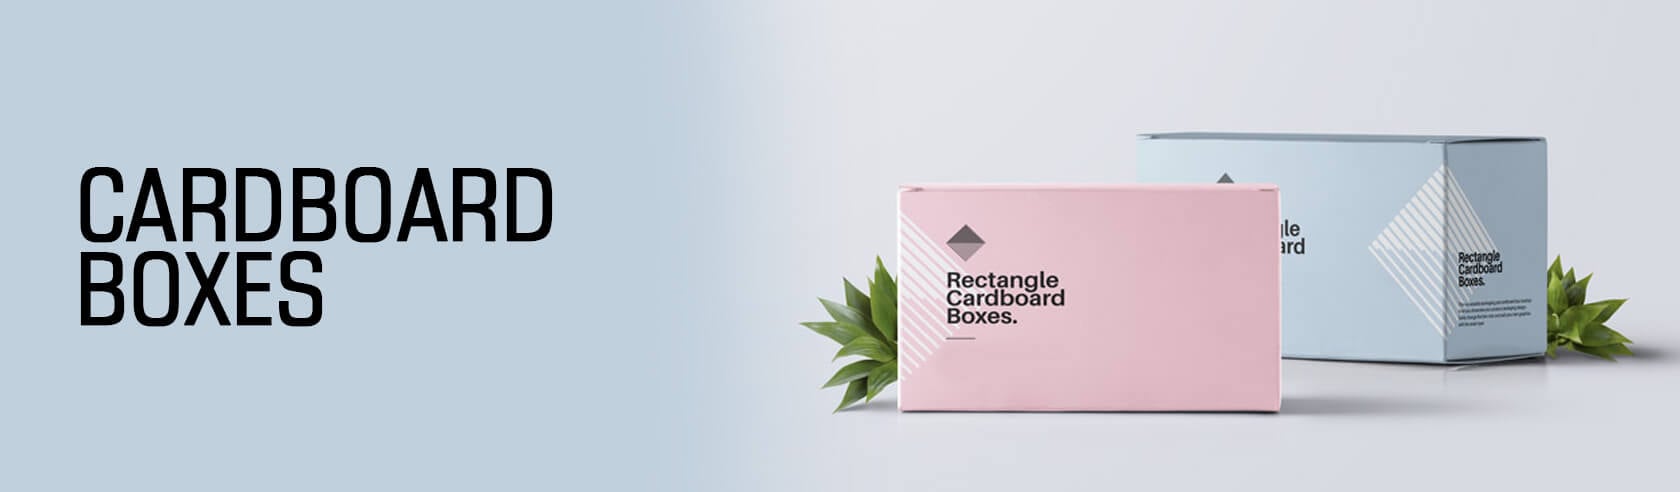 cardboard-boxes-blog-banner